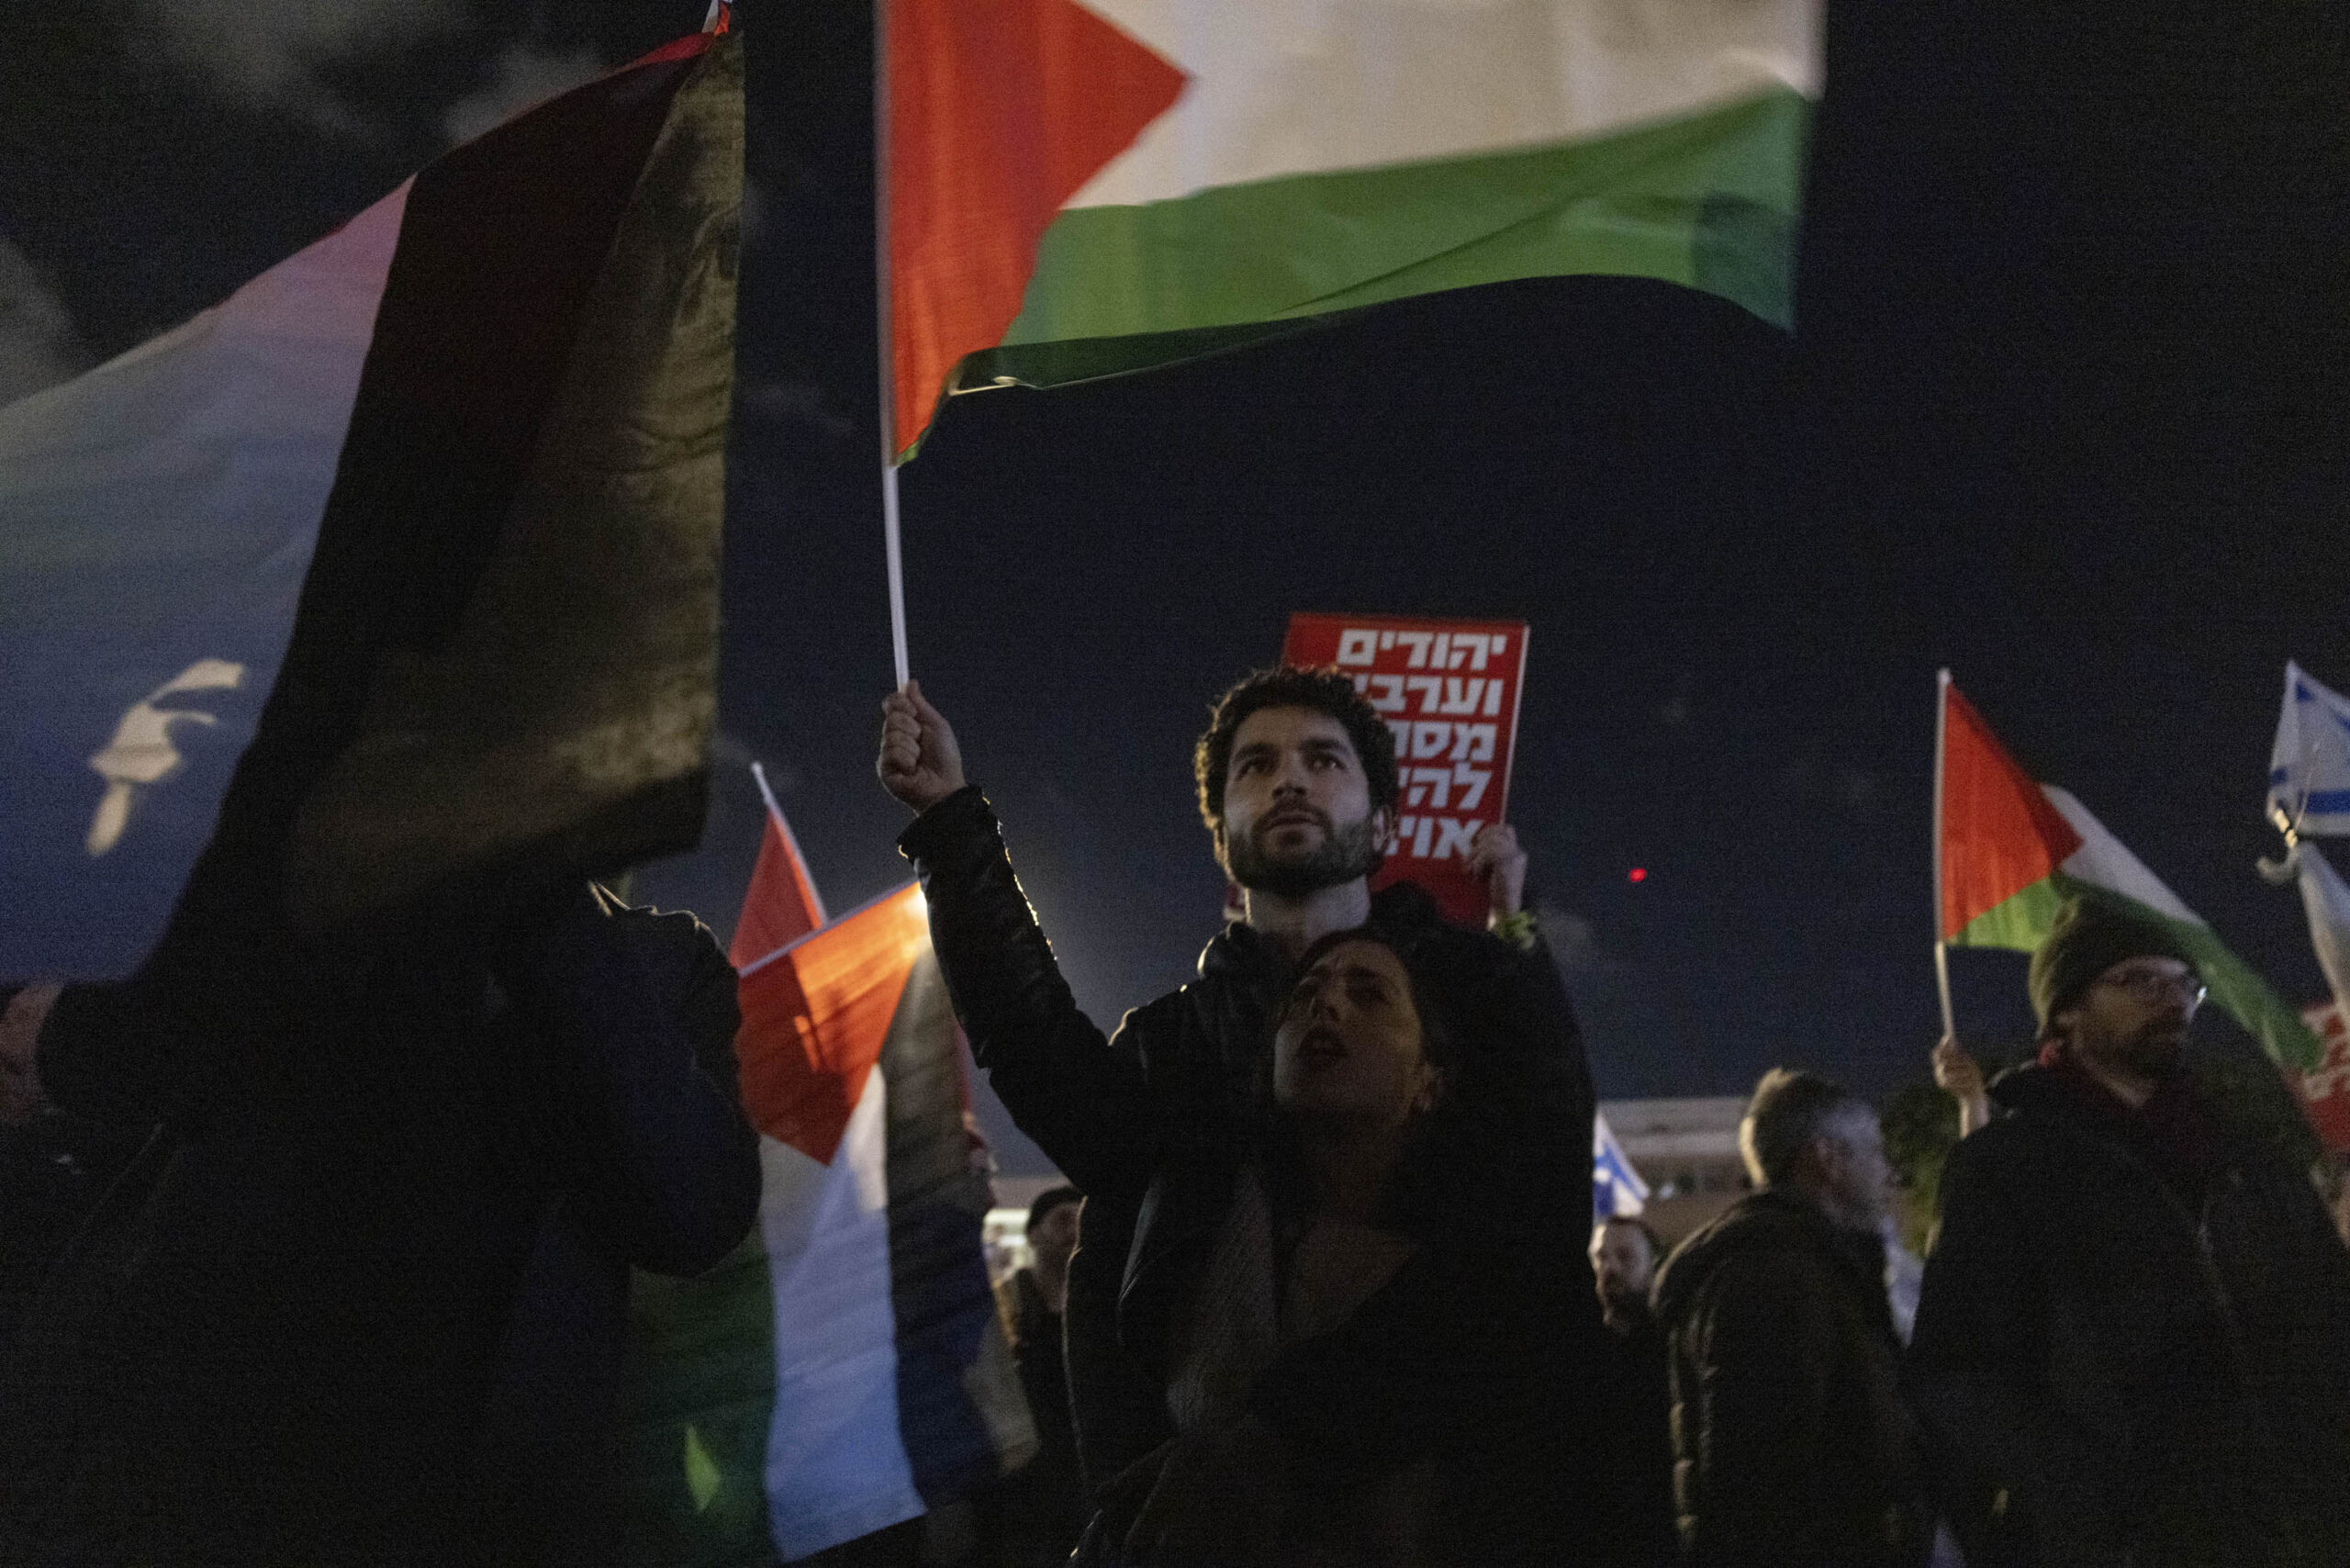 דגל פלסטין עורר התנגדות, אבל רוב המפגינים השלימו אתו. מפגין במחאה בכיכר הבימה (צילום: אורן זיו)